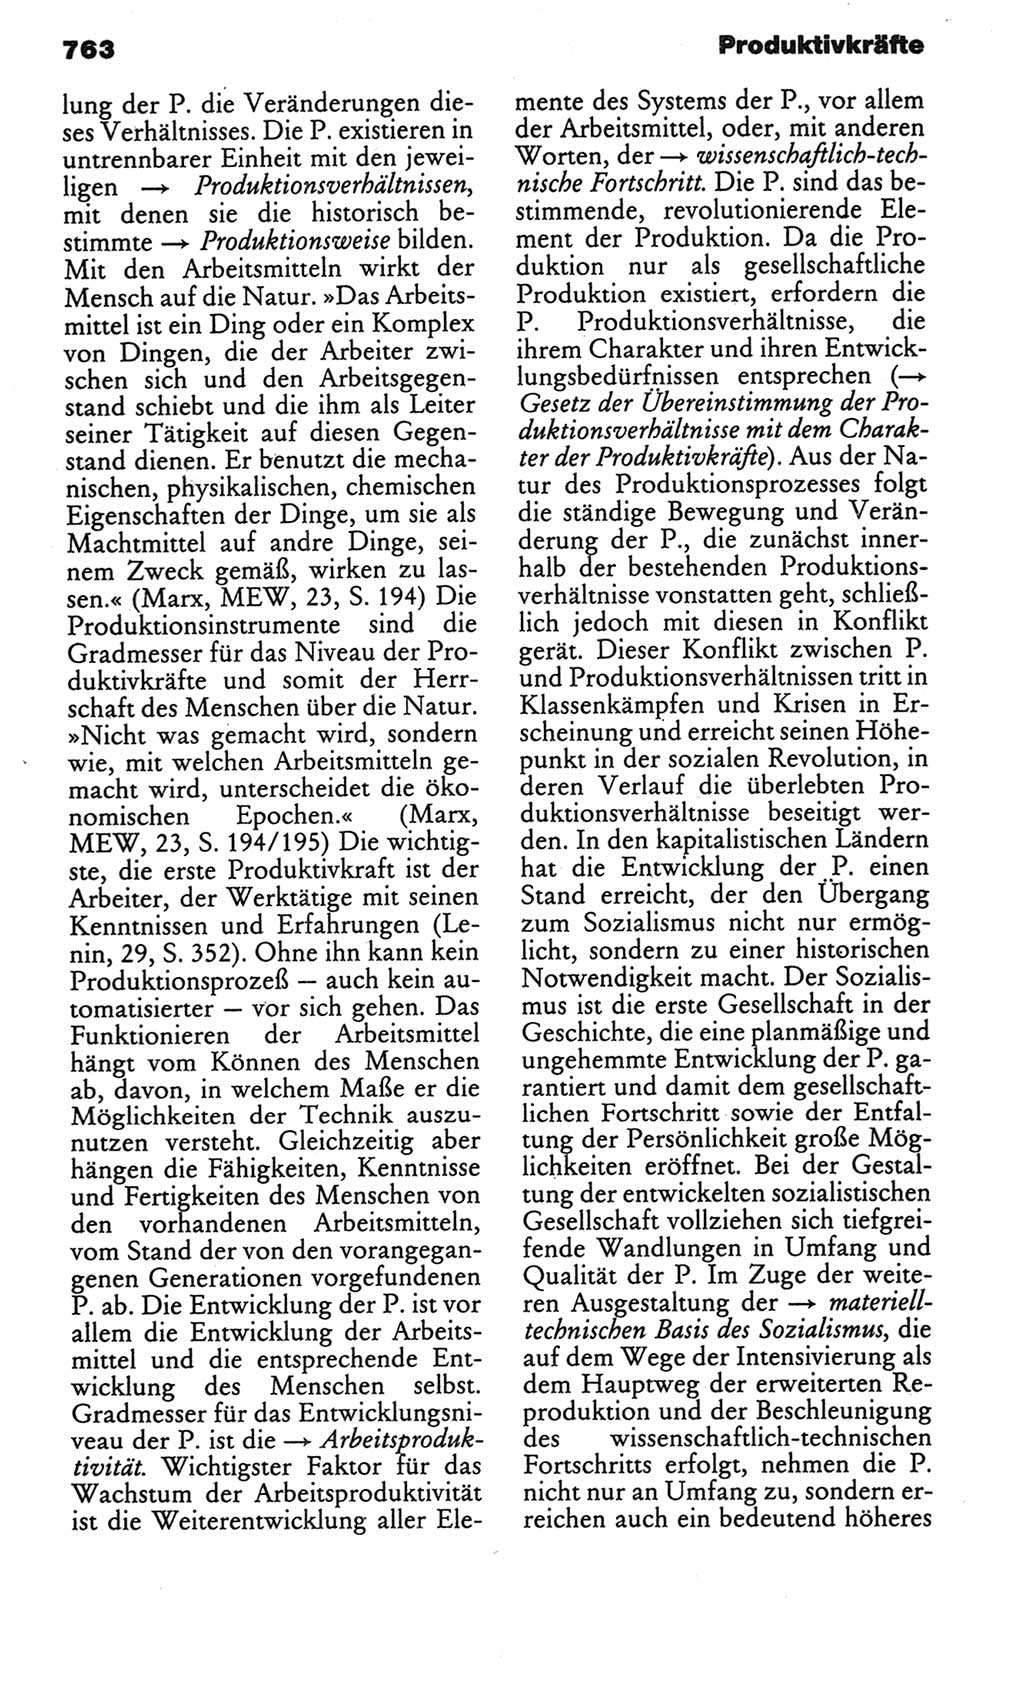 Kleines politisches Wörterbuch [Deutsche Demokratische Republik (DDR)] 1986, Seite 763 (Kl. pol. Wb. DDR 1986, S. 763)